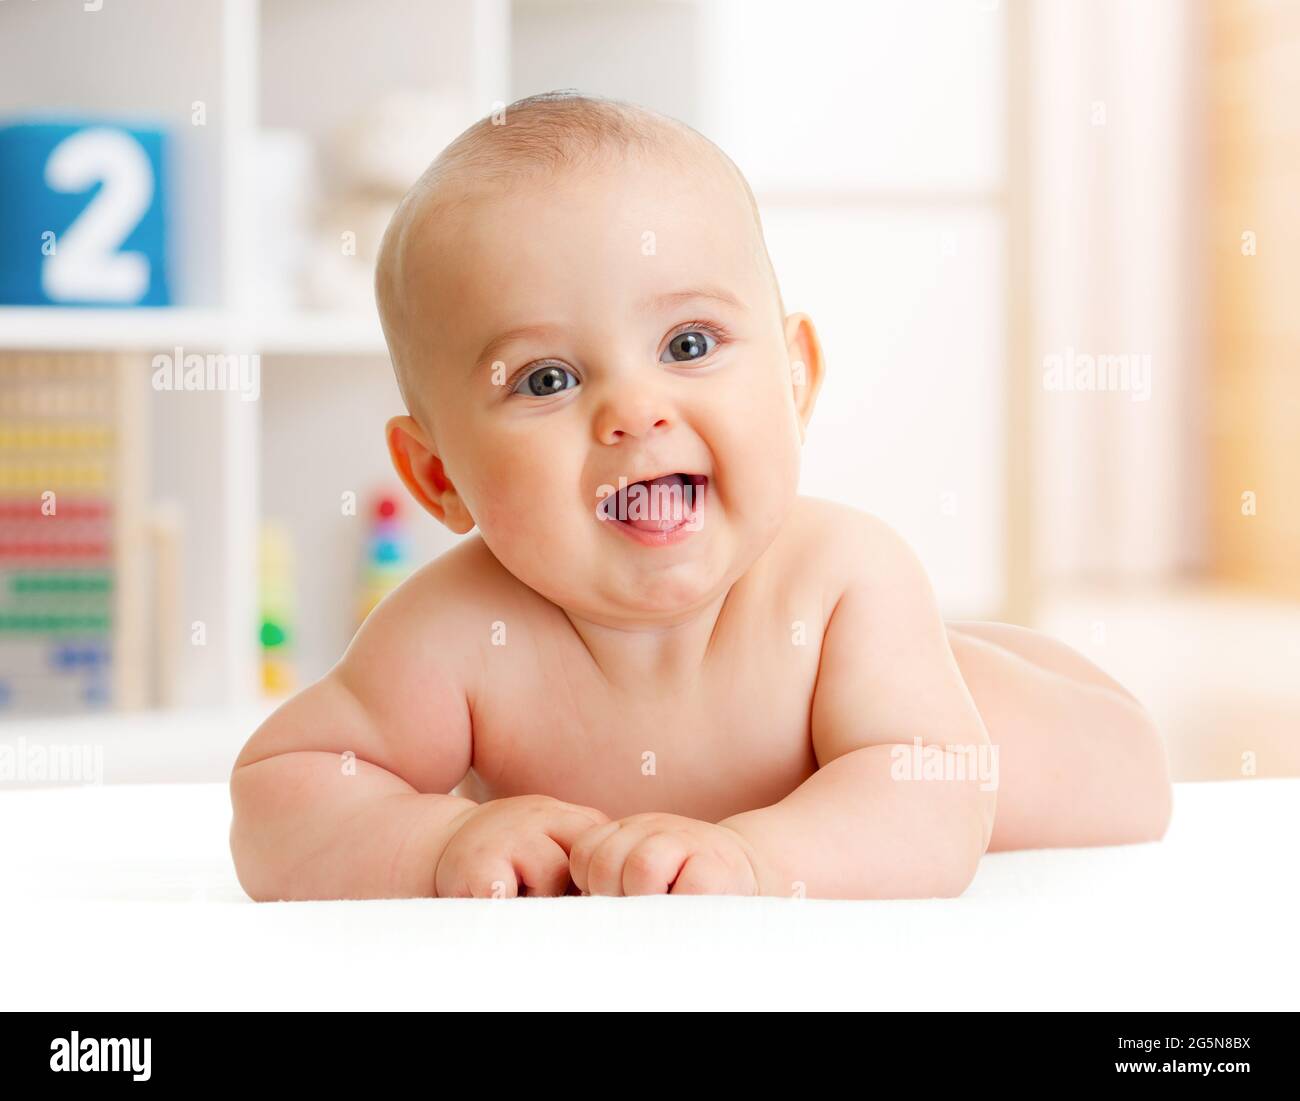 Adorable bebé sonriente tumbado en la habitación Foto de stock